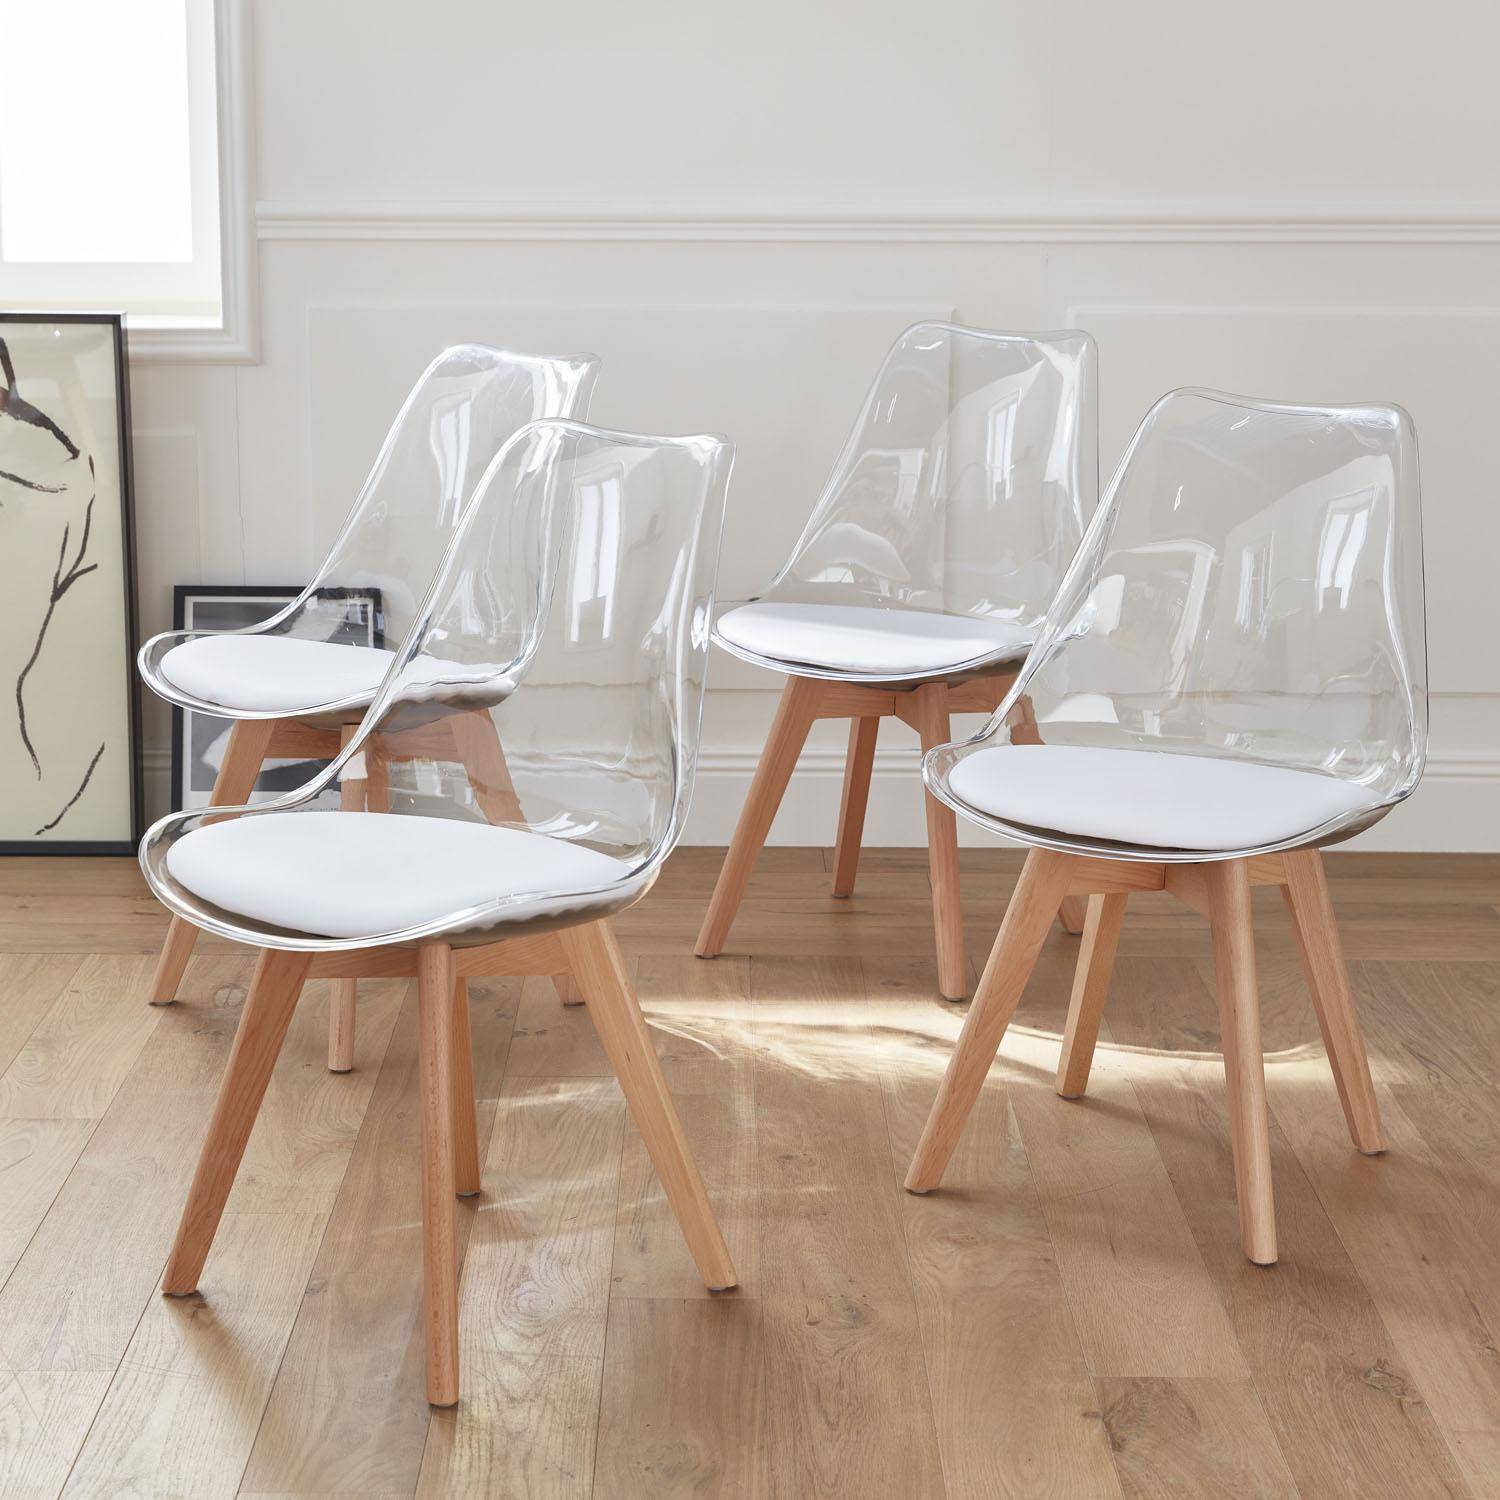 Lot de 4 chaises scandinaves - Lagertha - pieds bois, fauteuils 1 place, coussin blanc, coque transparente  Photo2